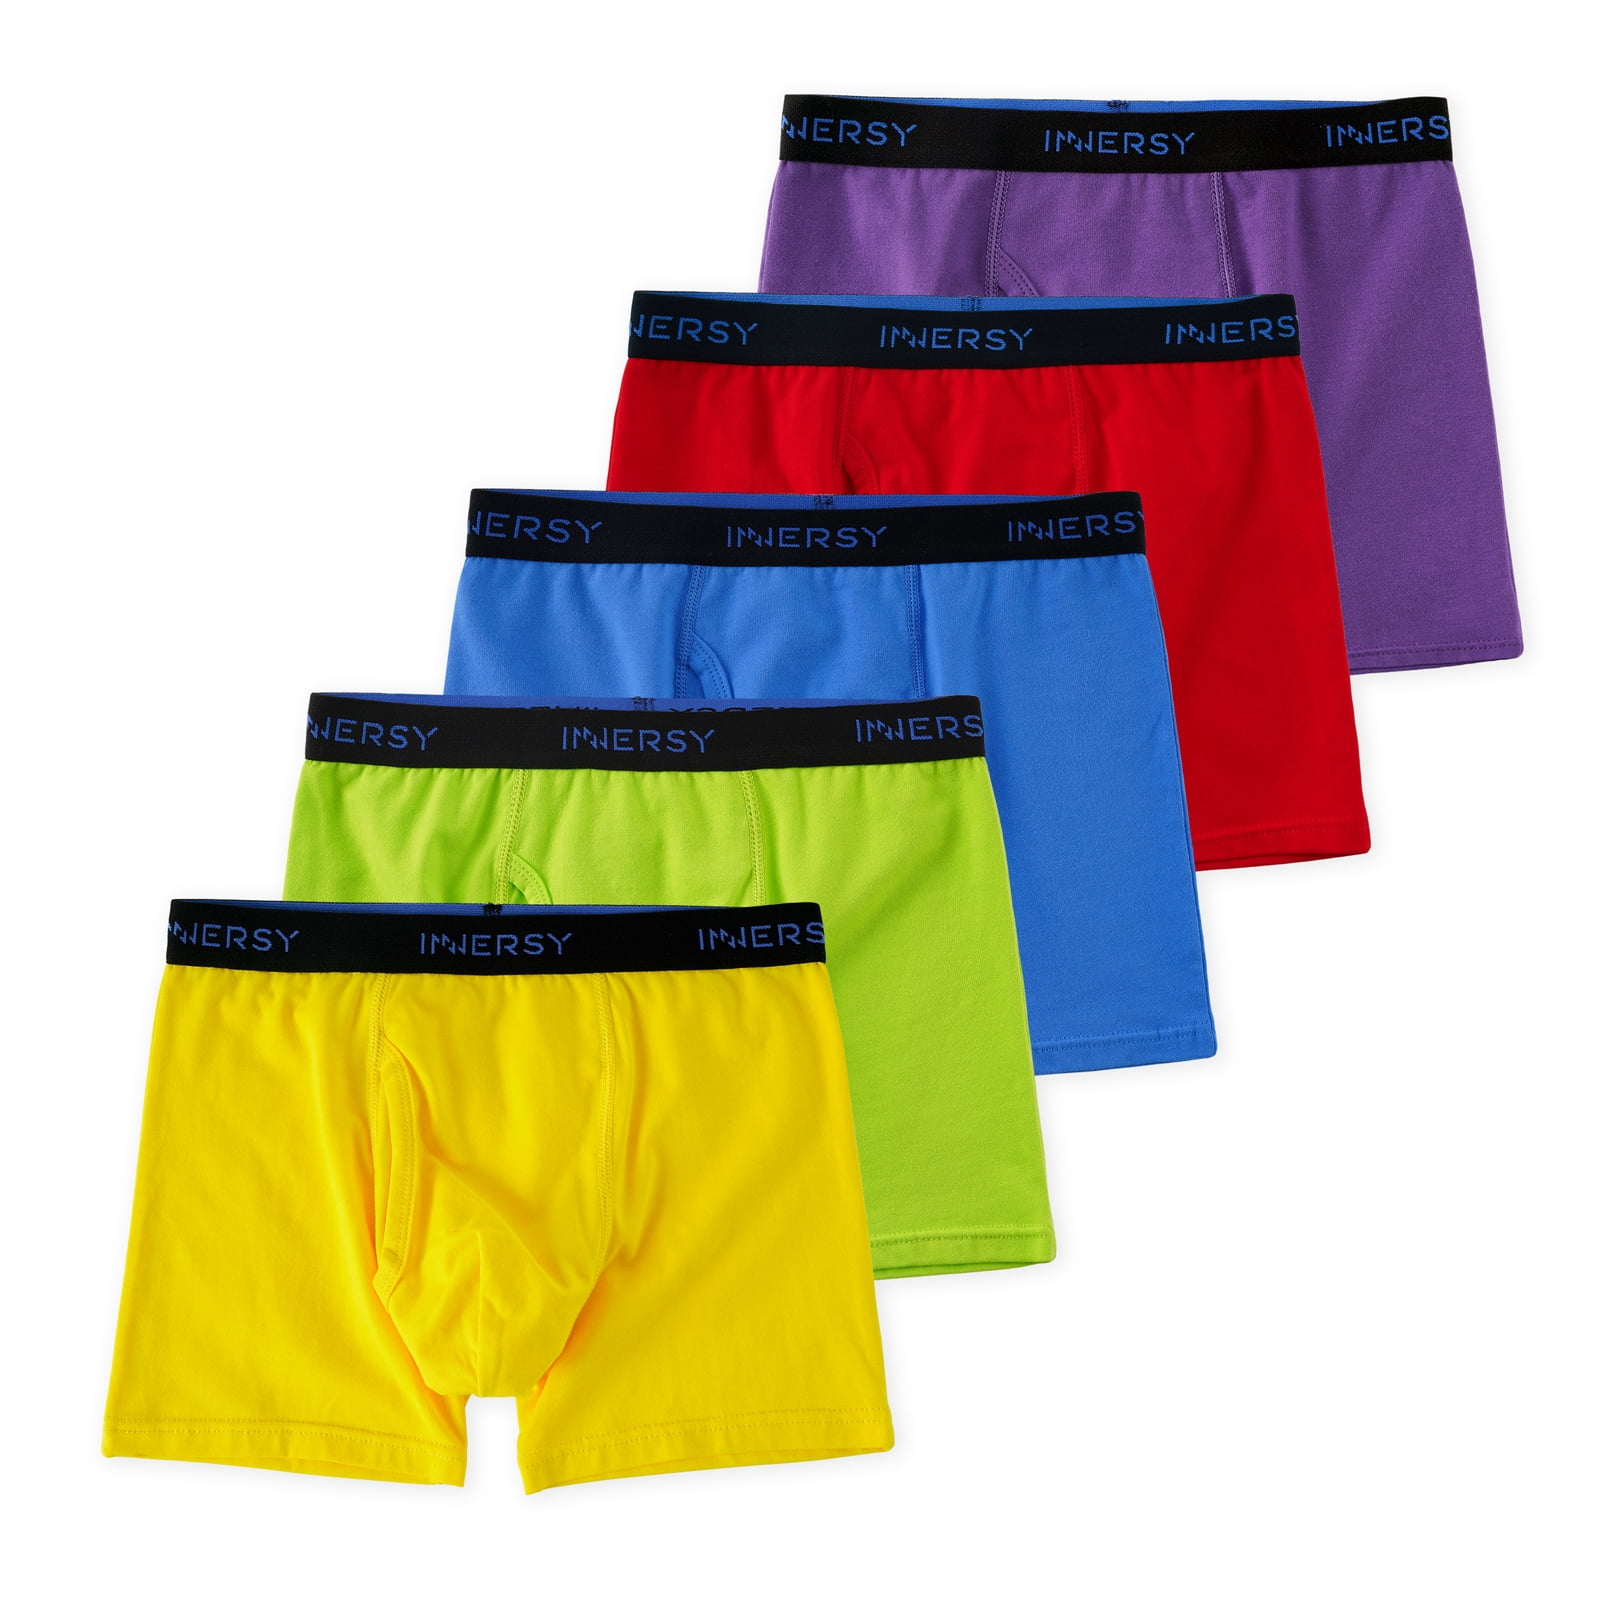 New Boys Kids Official Afl Underwear 4 Pack Briefs Undies Boy Brief Sizes 2-8 